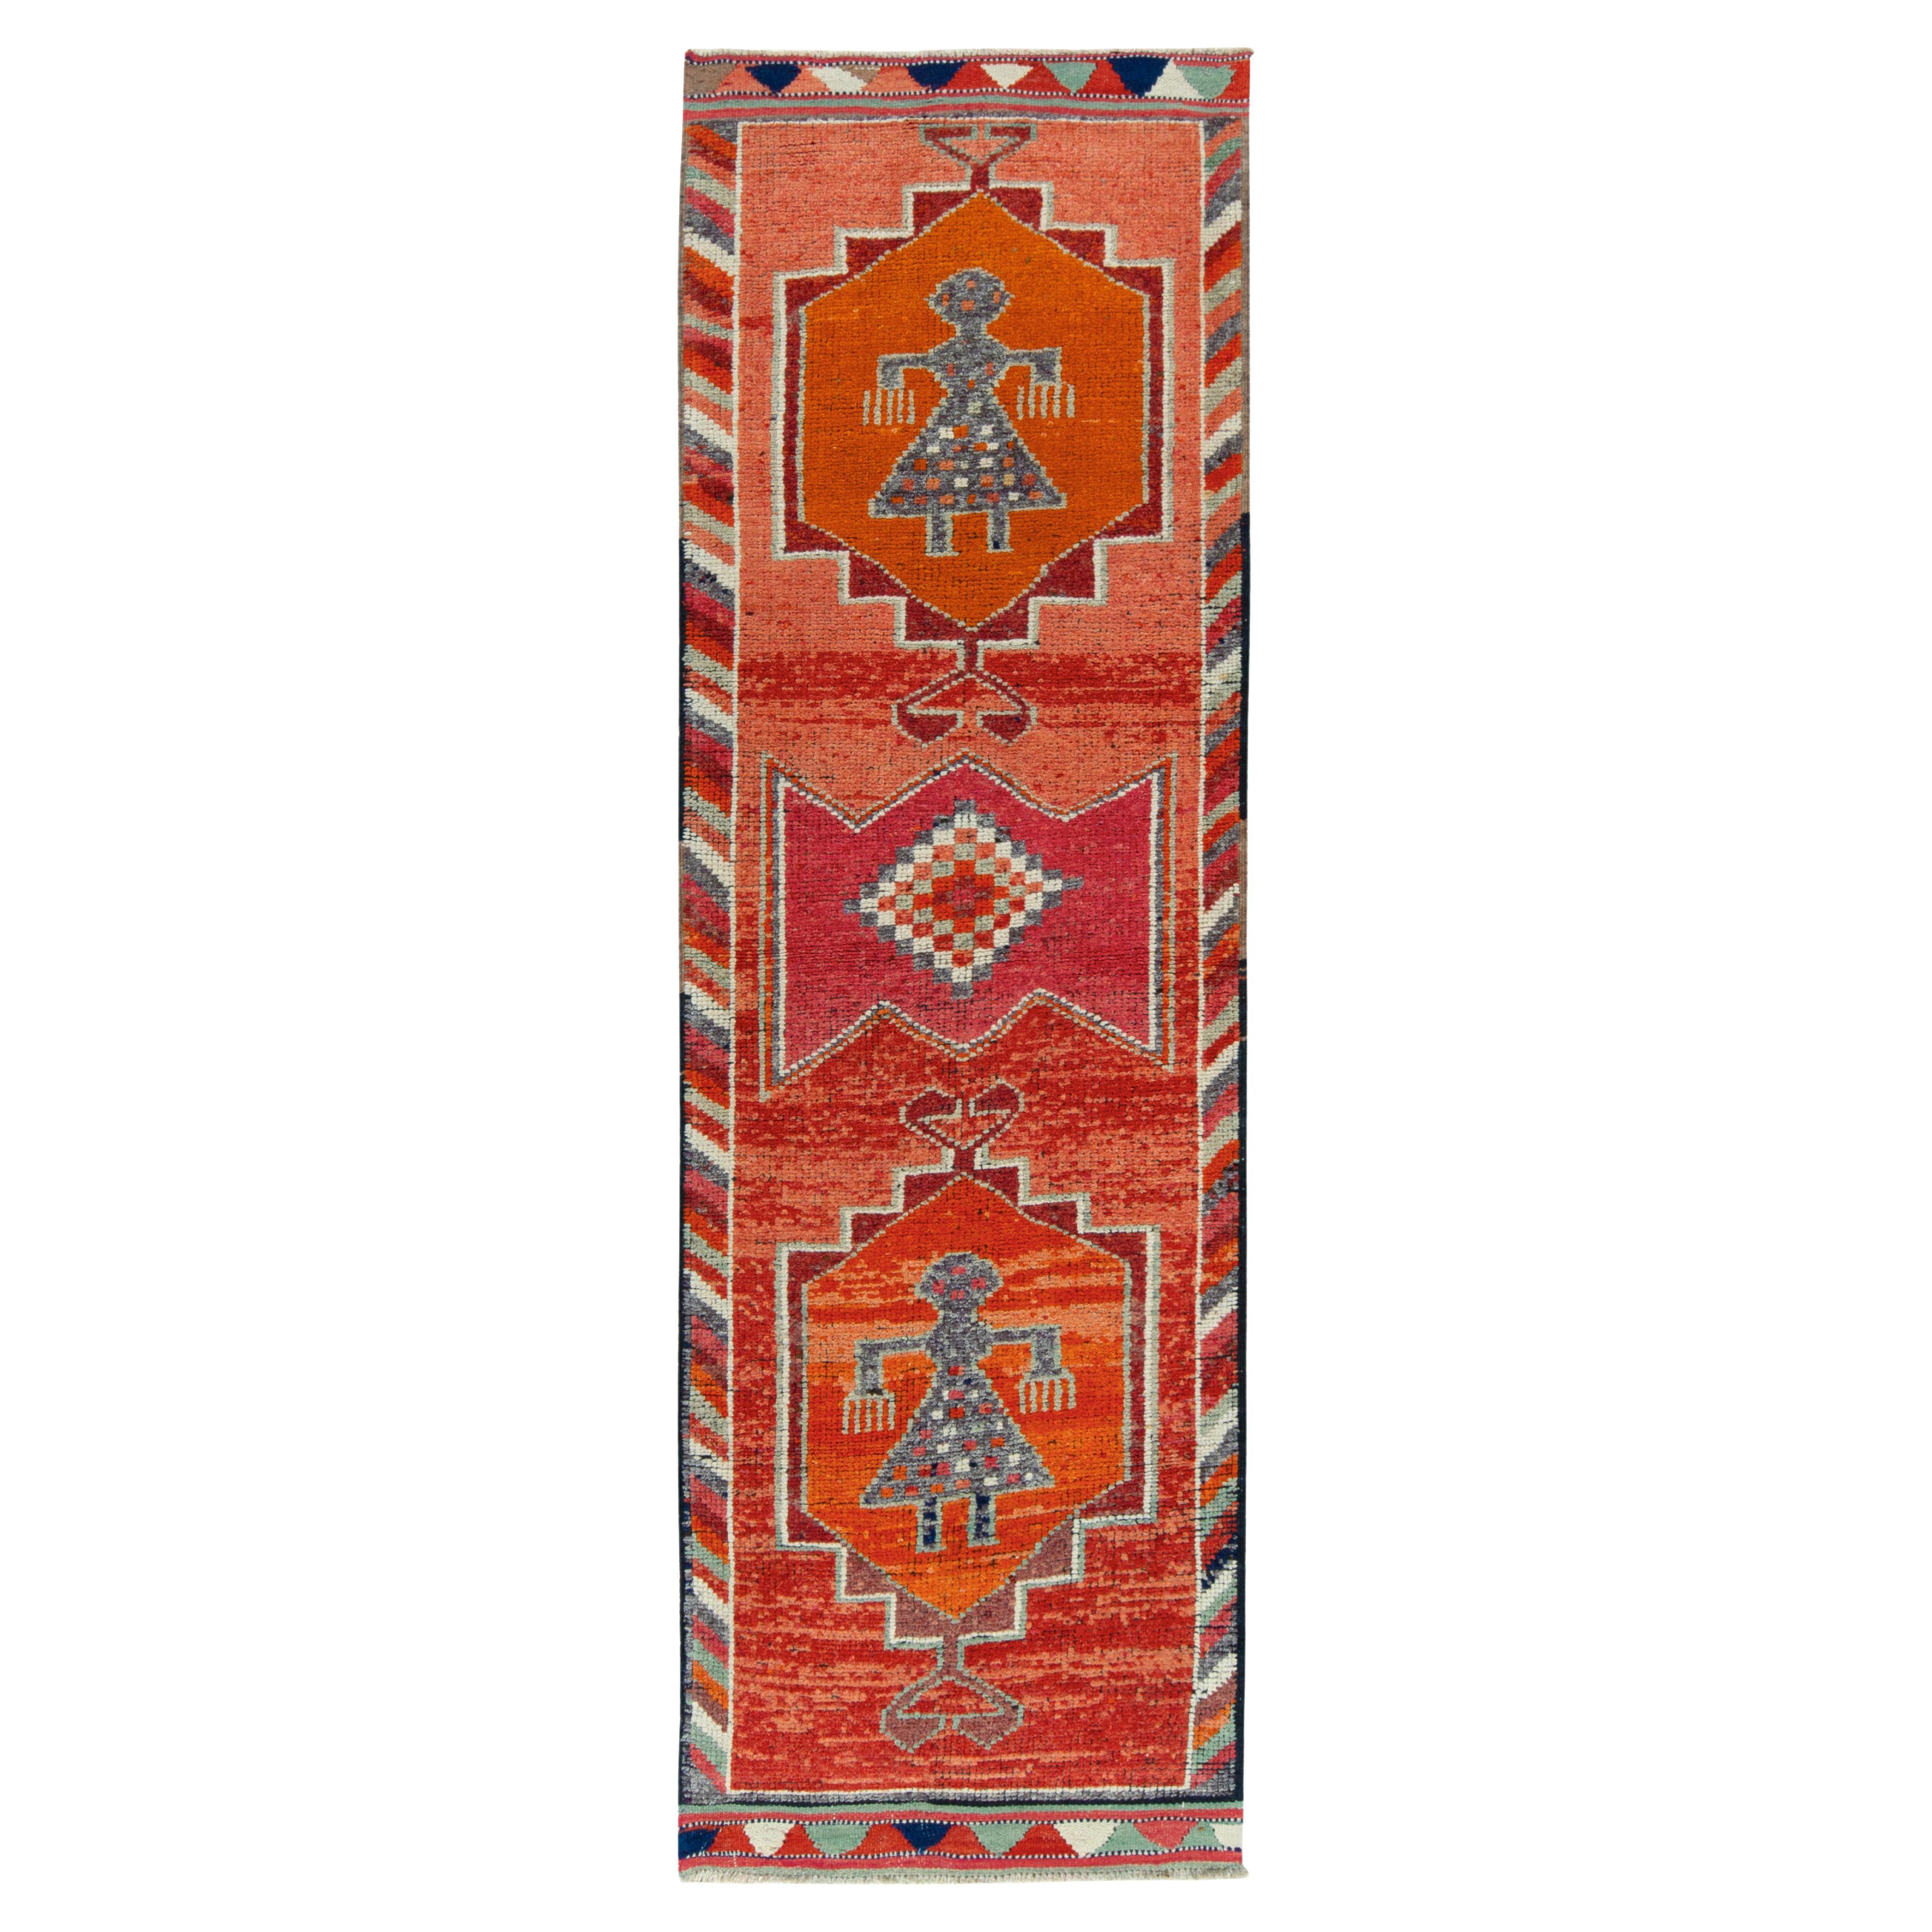 1950s Vintage Tribal Rug in Red, Orange, and Geometric Pattern by Rug & Kilim